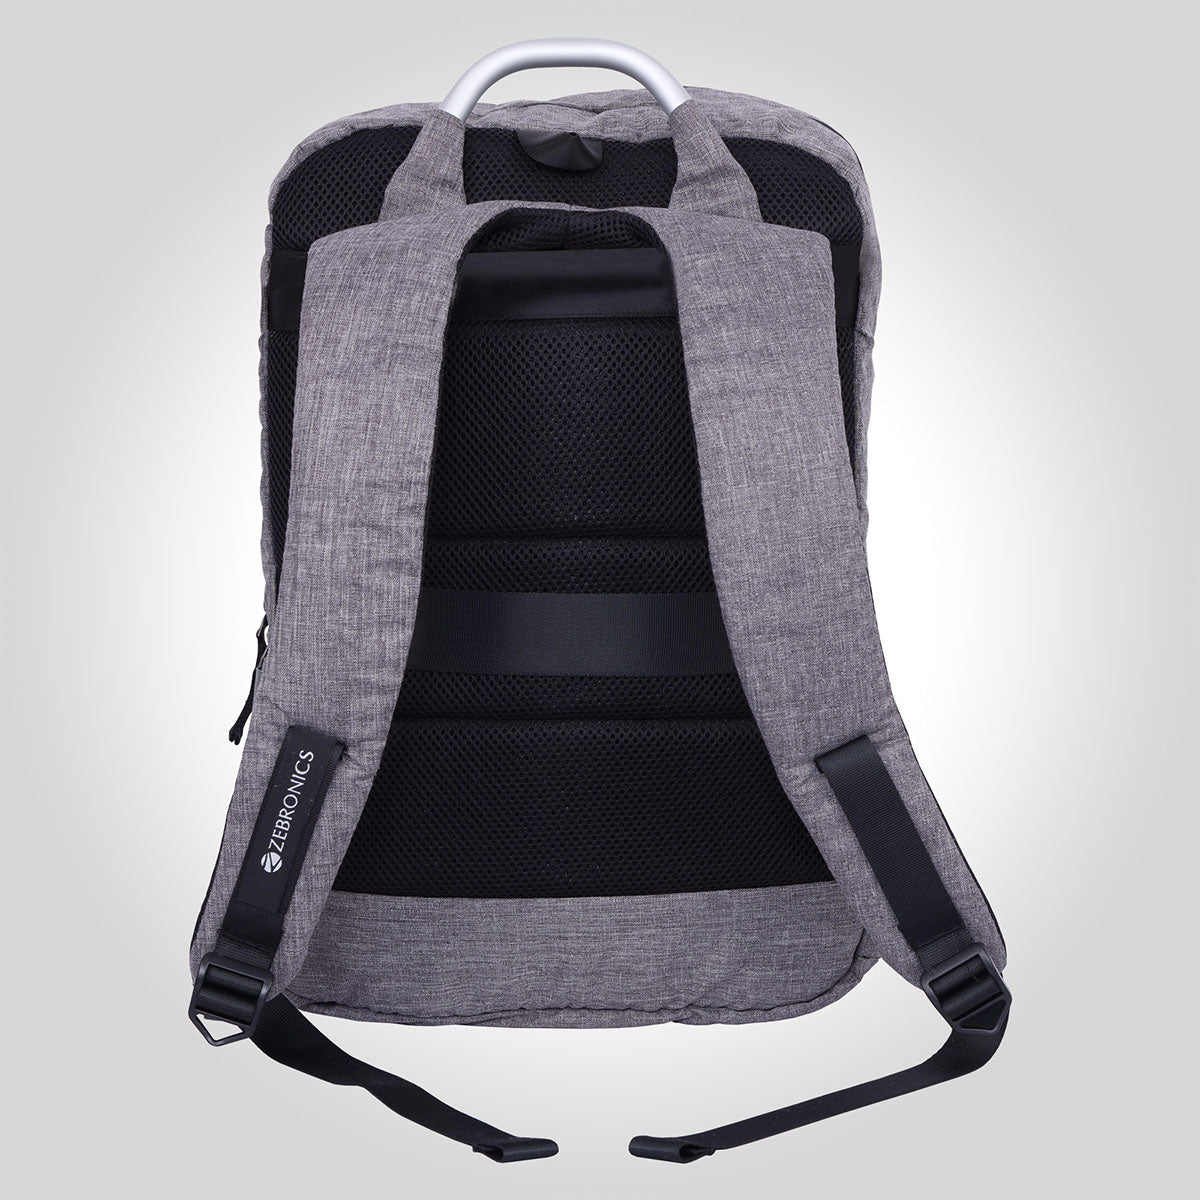 Zeb-Techshield X4 - Backpack - Zebronics